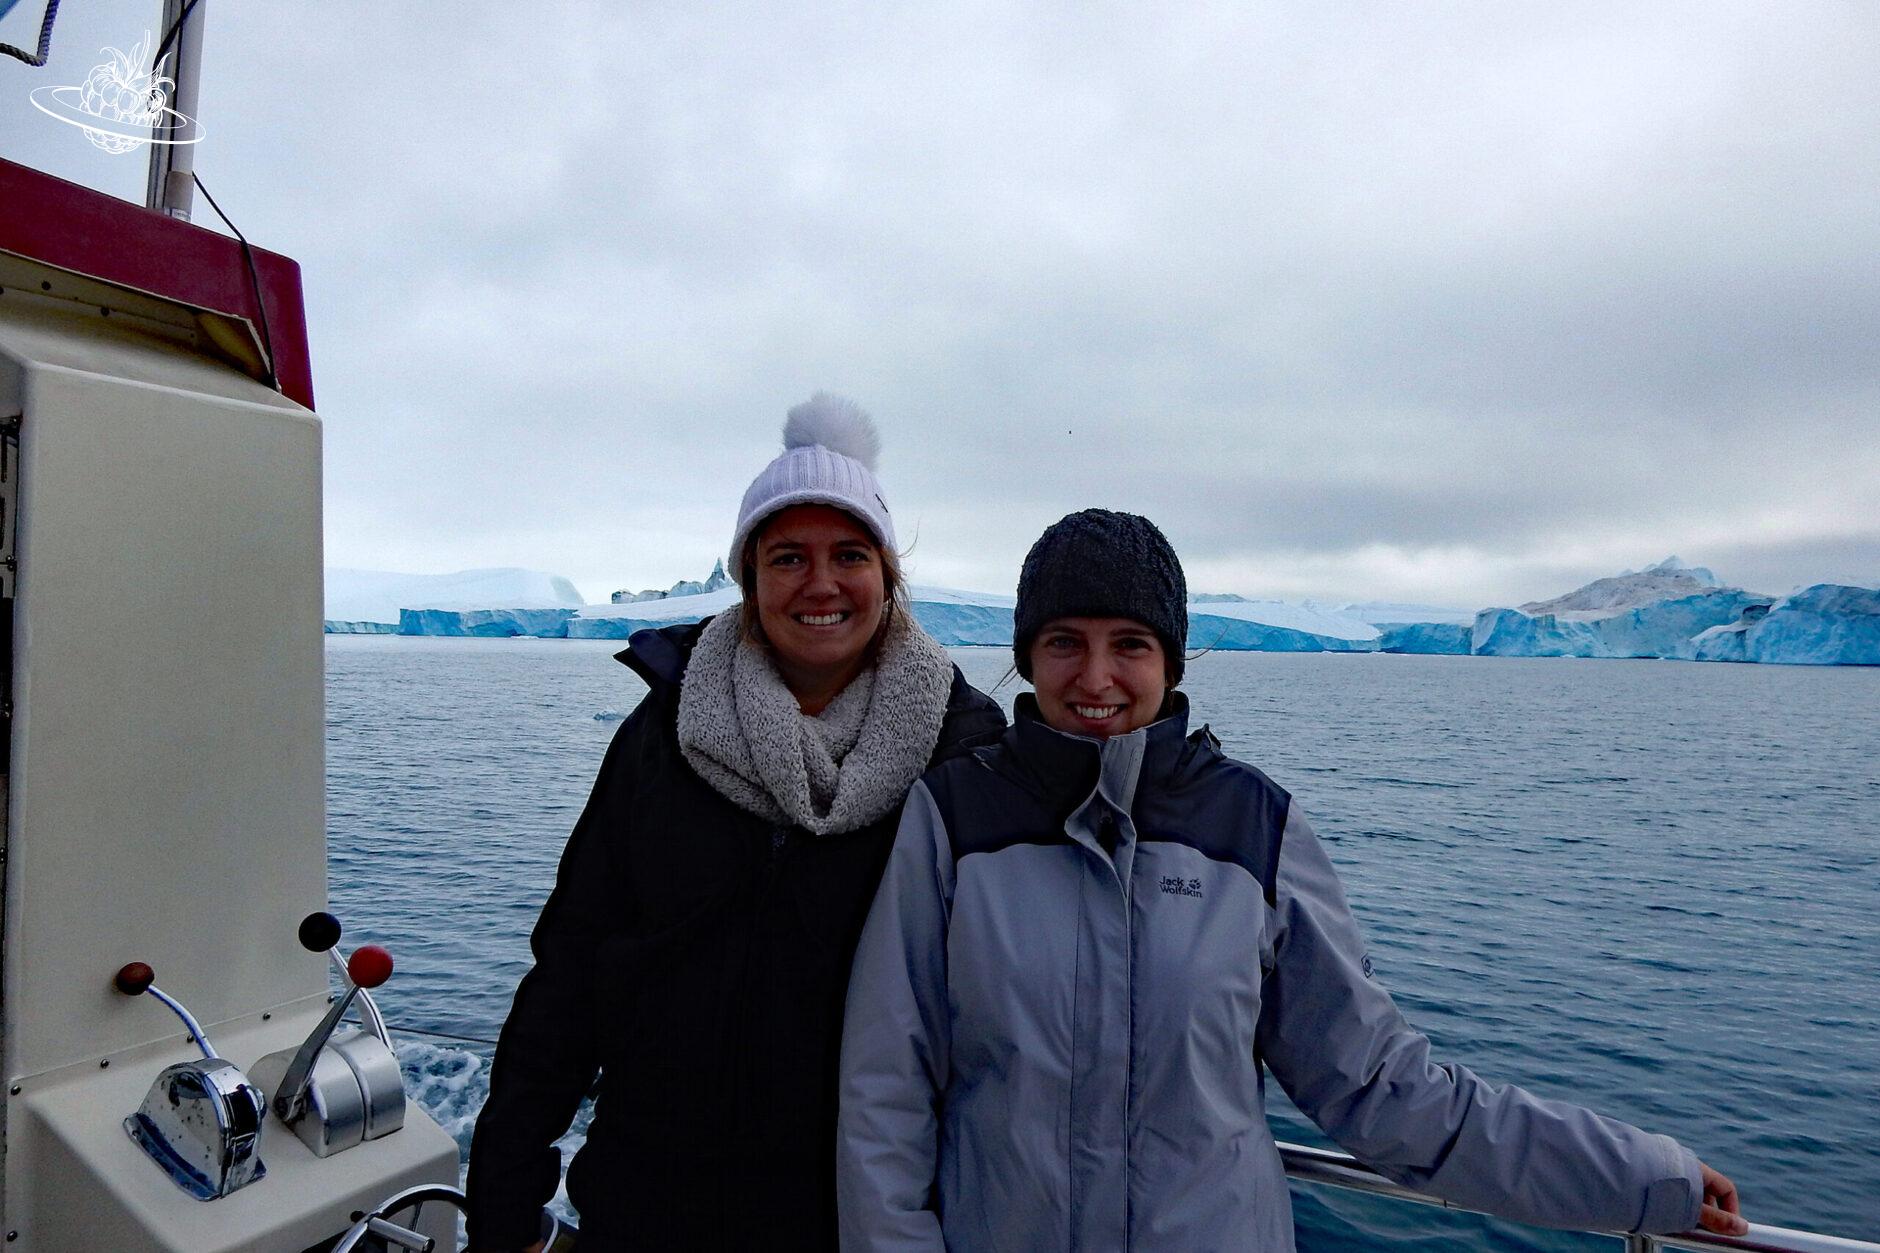 2 Frauen auf dem Schiff und im Hintergrund das Meer und die Eisberge